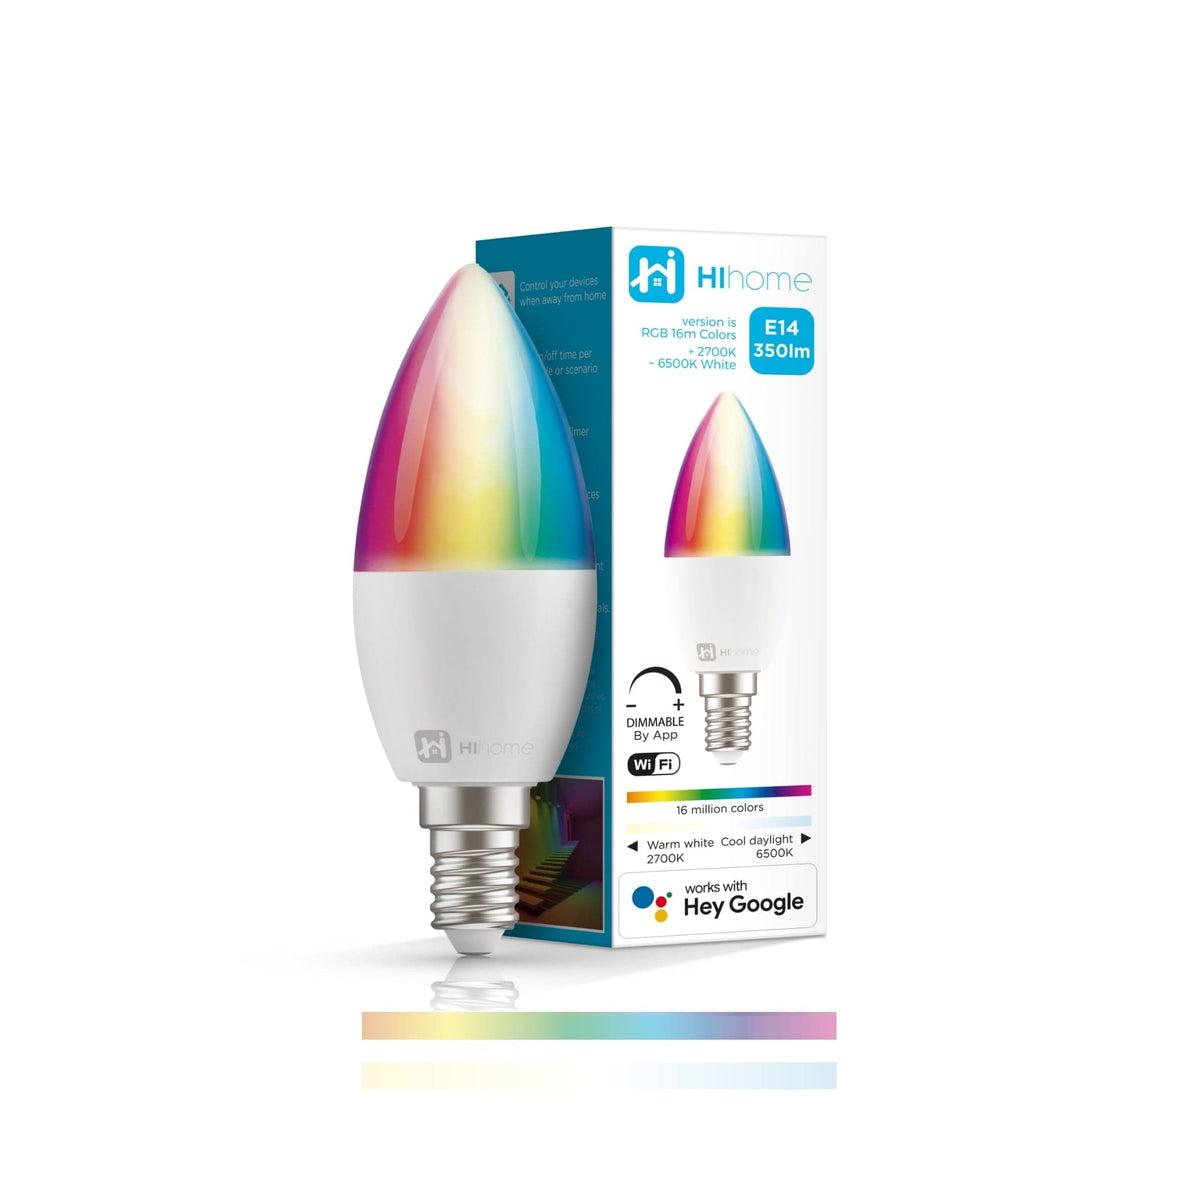 6-pak Hihome Smart LED WiFi-pære E14 Gen.2 RGB 16M farver + varm hvid 2700K til kold hvid 6500K